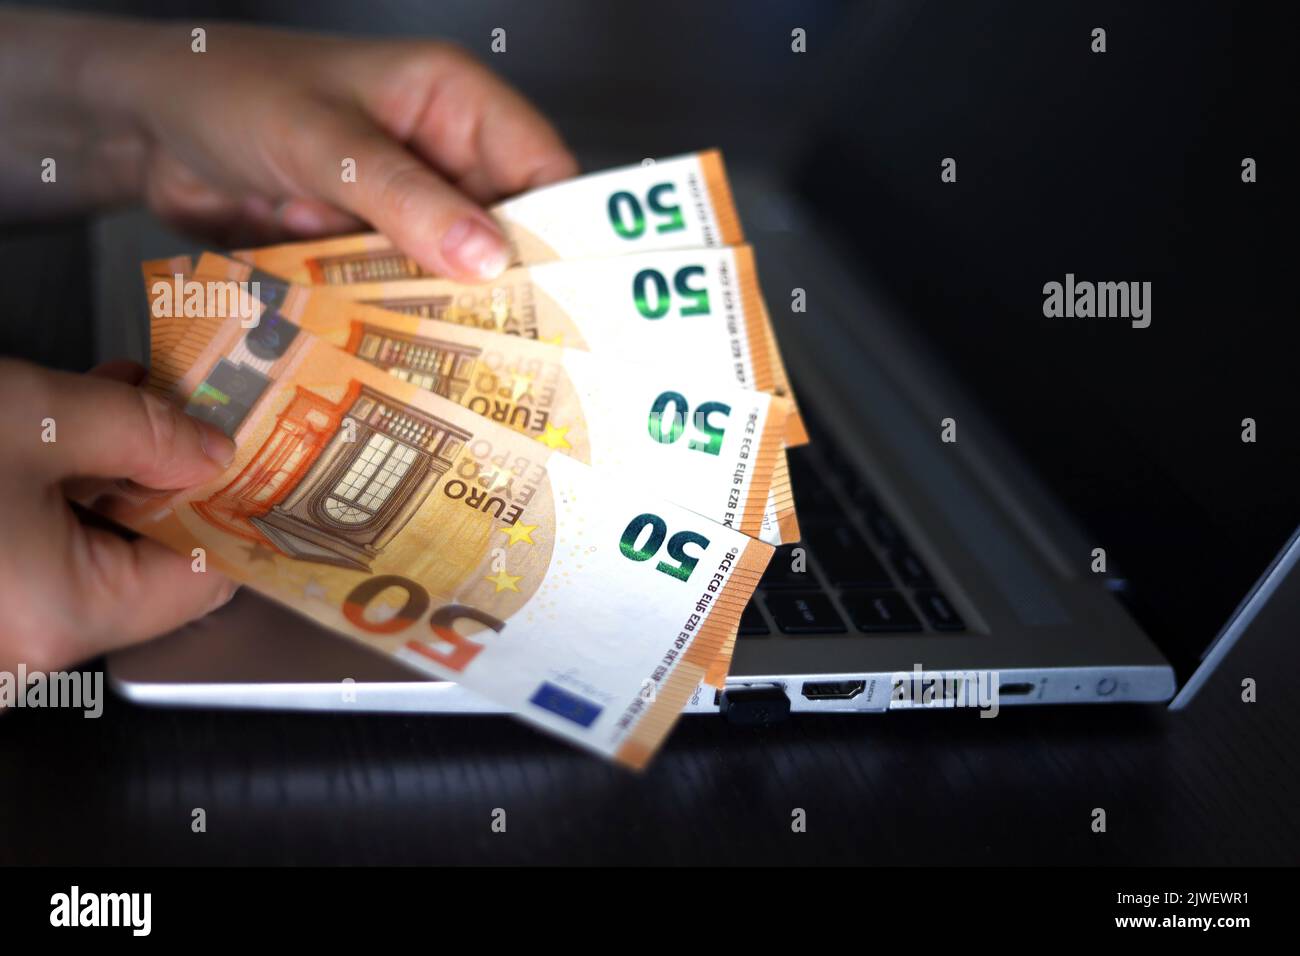 Billetes en euros en manos femeninas sobre el fondo del ordenador portátil. Mujer contando dinero, concepto de salarios o bonos Foto de stock